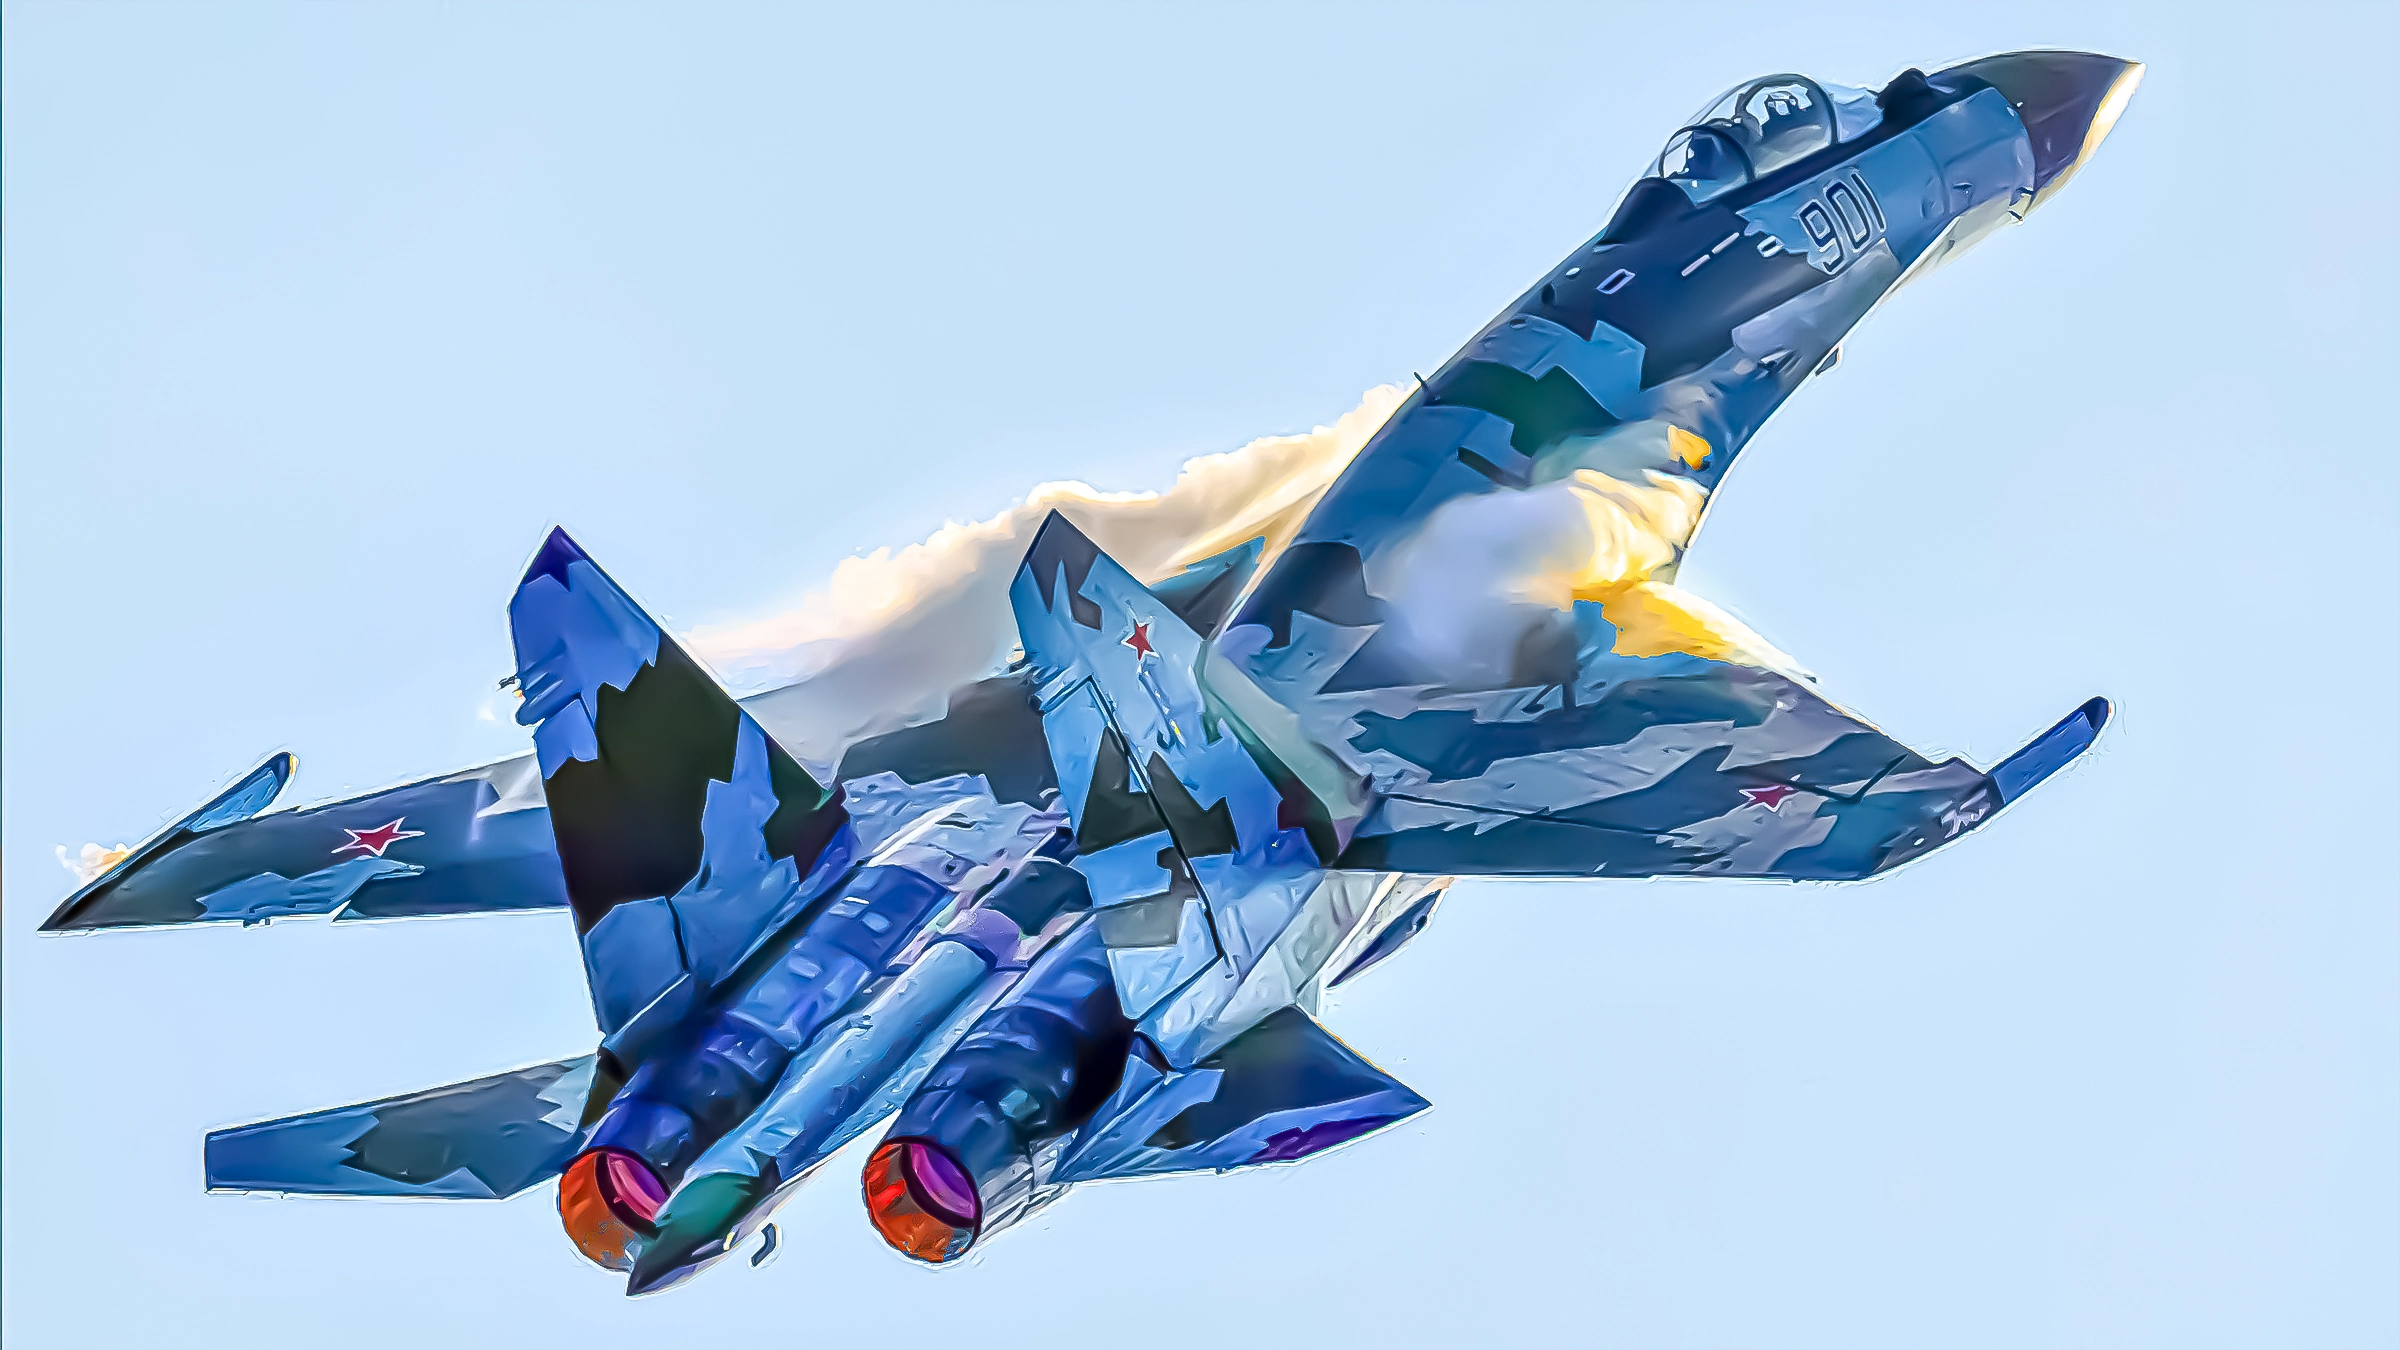 La Fuerza Aeroespacial Rusa recibe segundo lote de cazas Su-35S